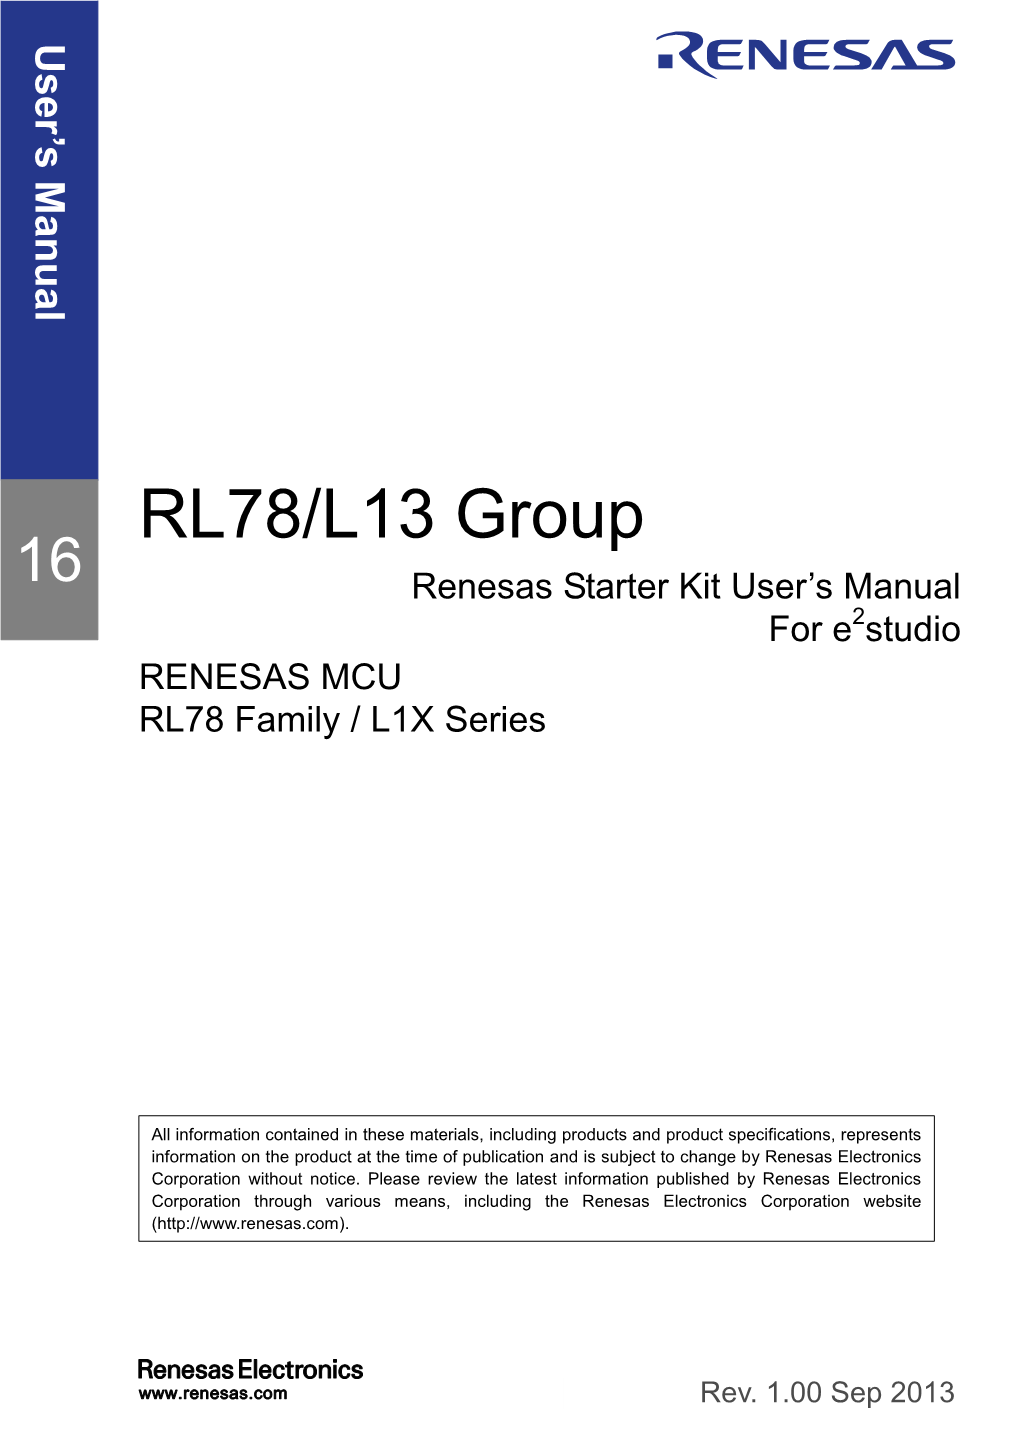 Renesas Starter Kit for RL78/L13 User's Manual